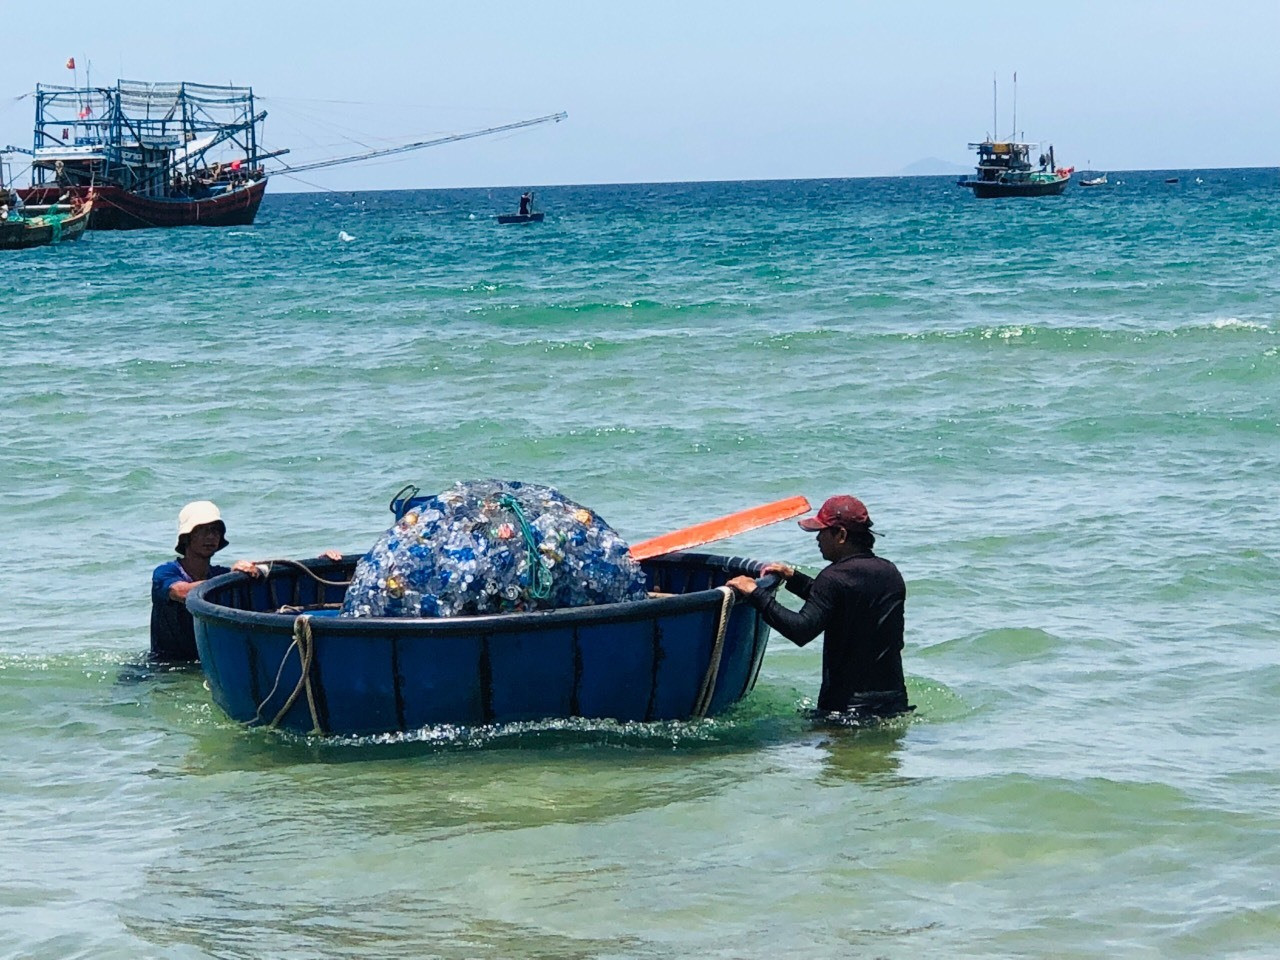 Sau mỗi chuyến biển, các tàu mang về bờ khoảng từ 30 đến 50 kg rác thải.